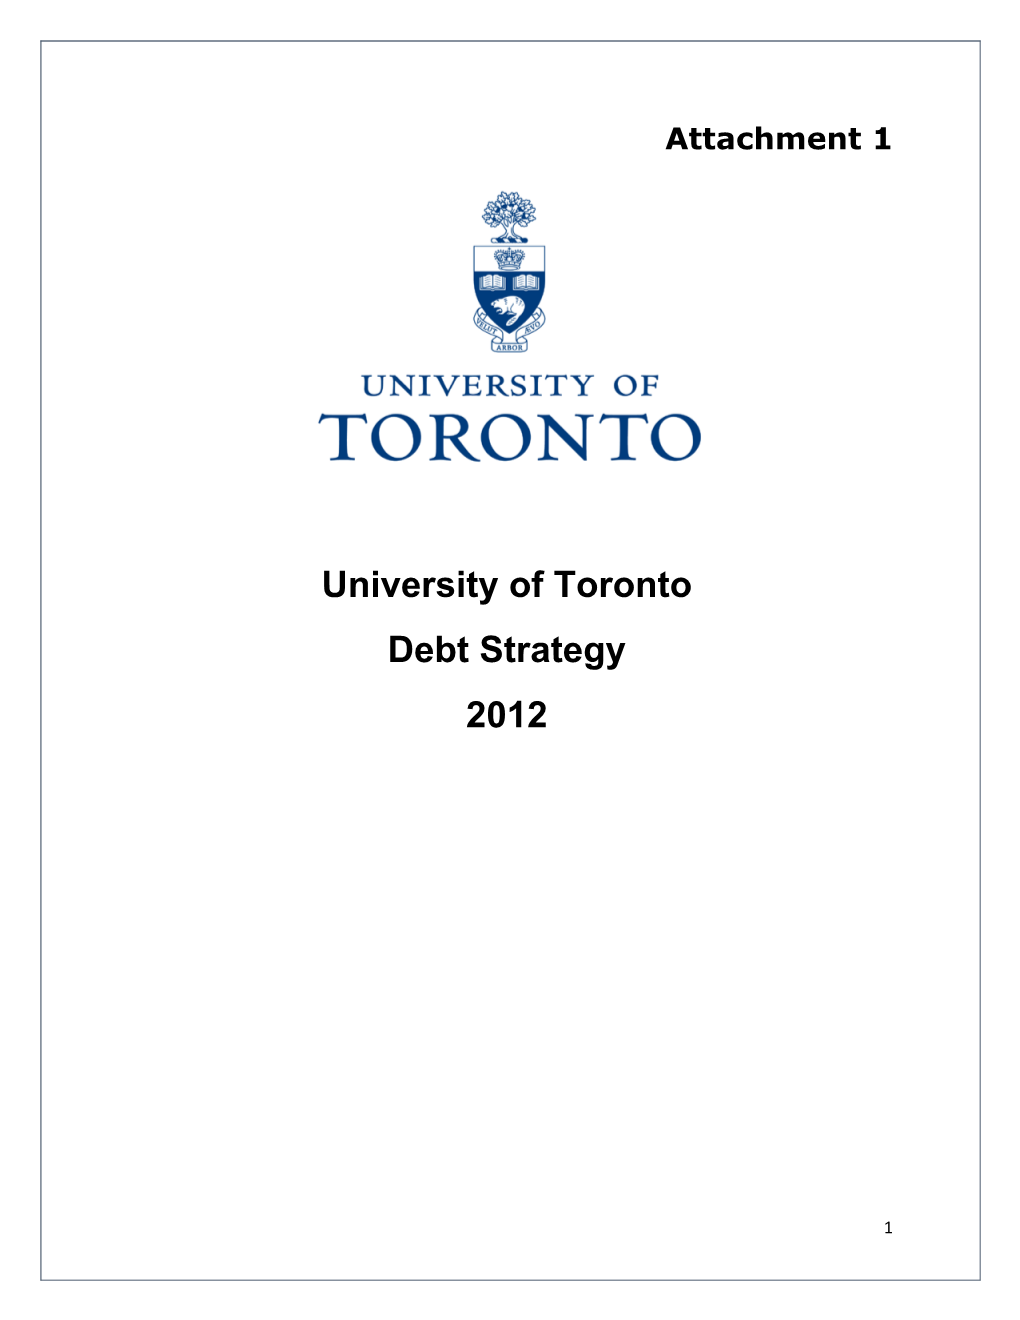 Debt Strategy 2012 Final